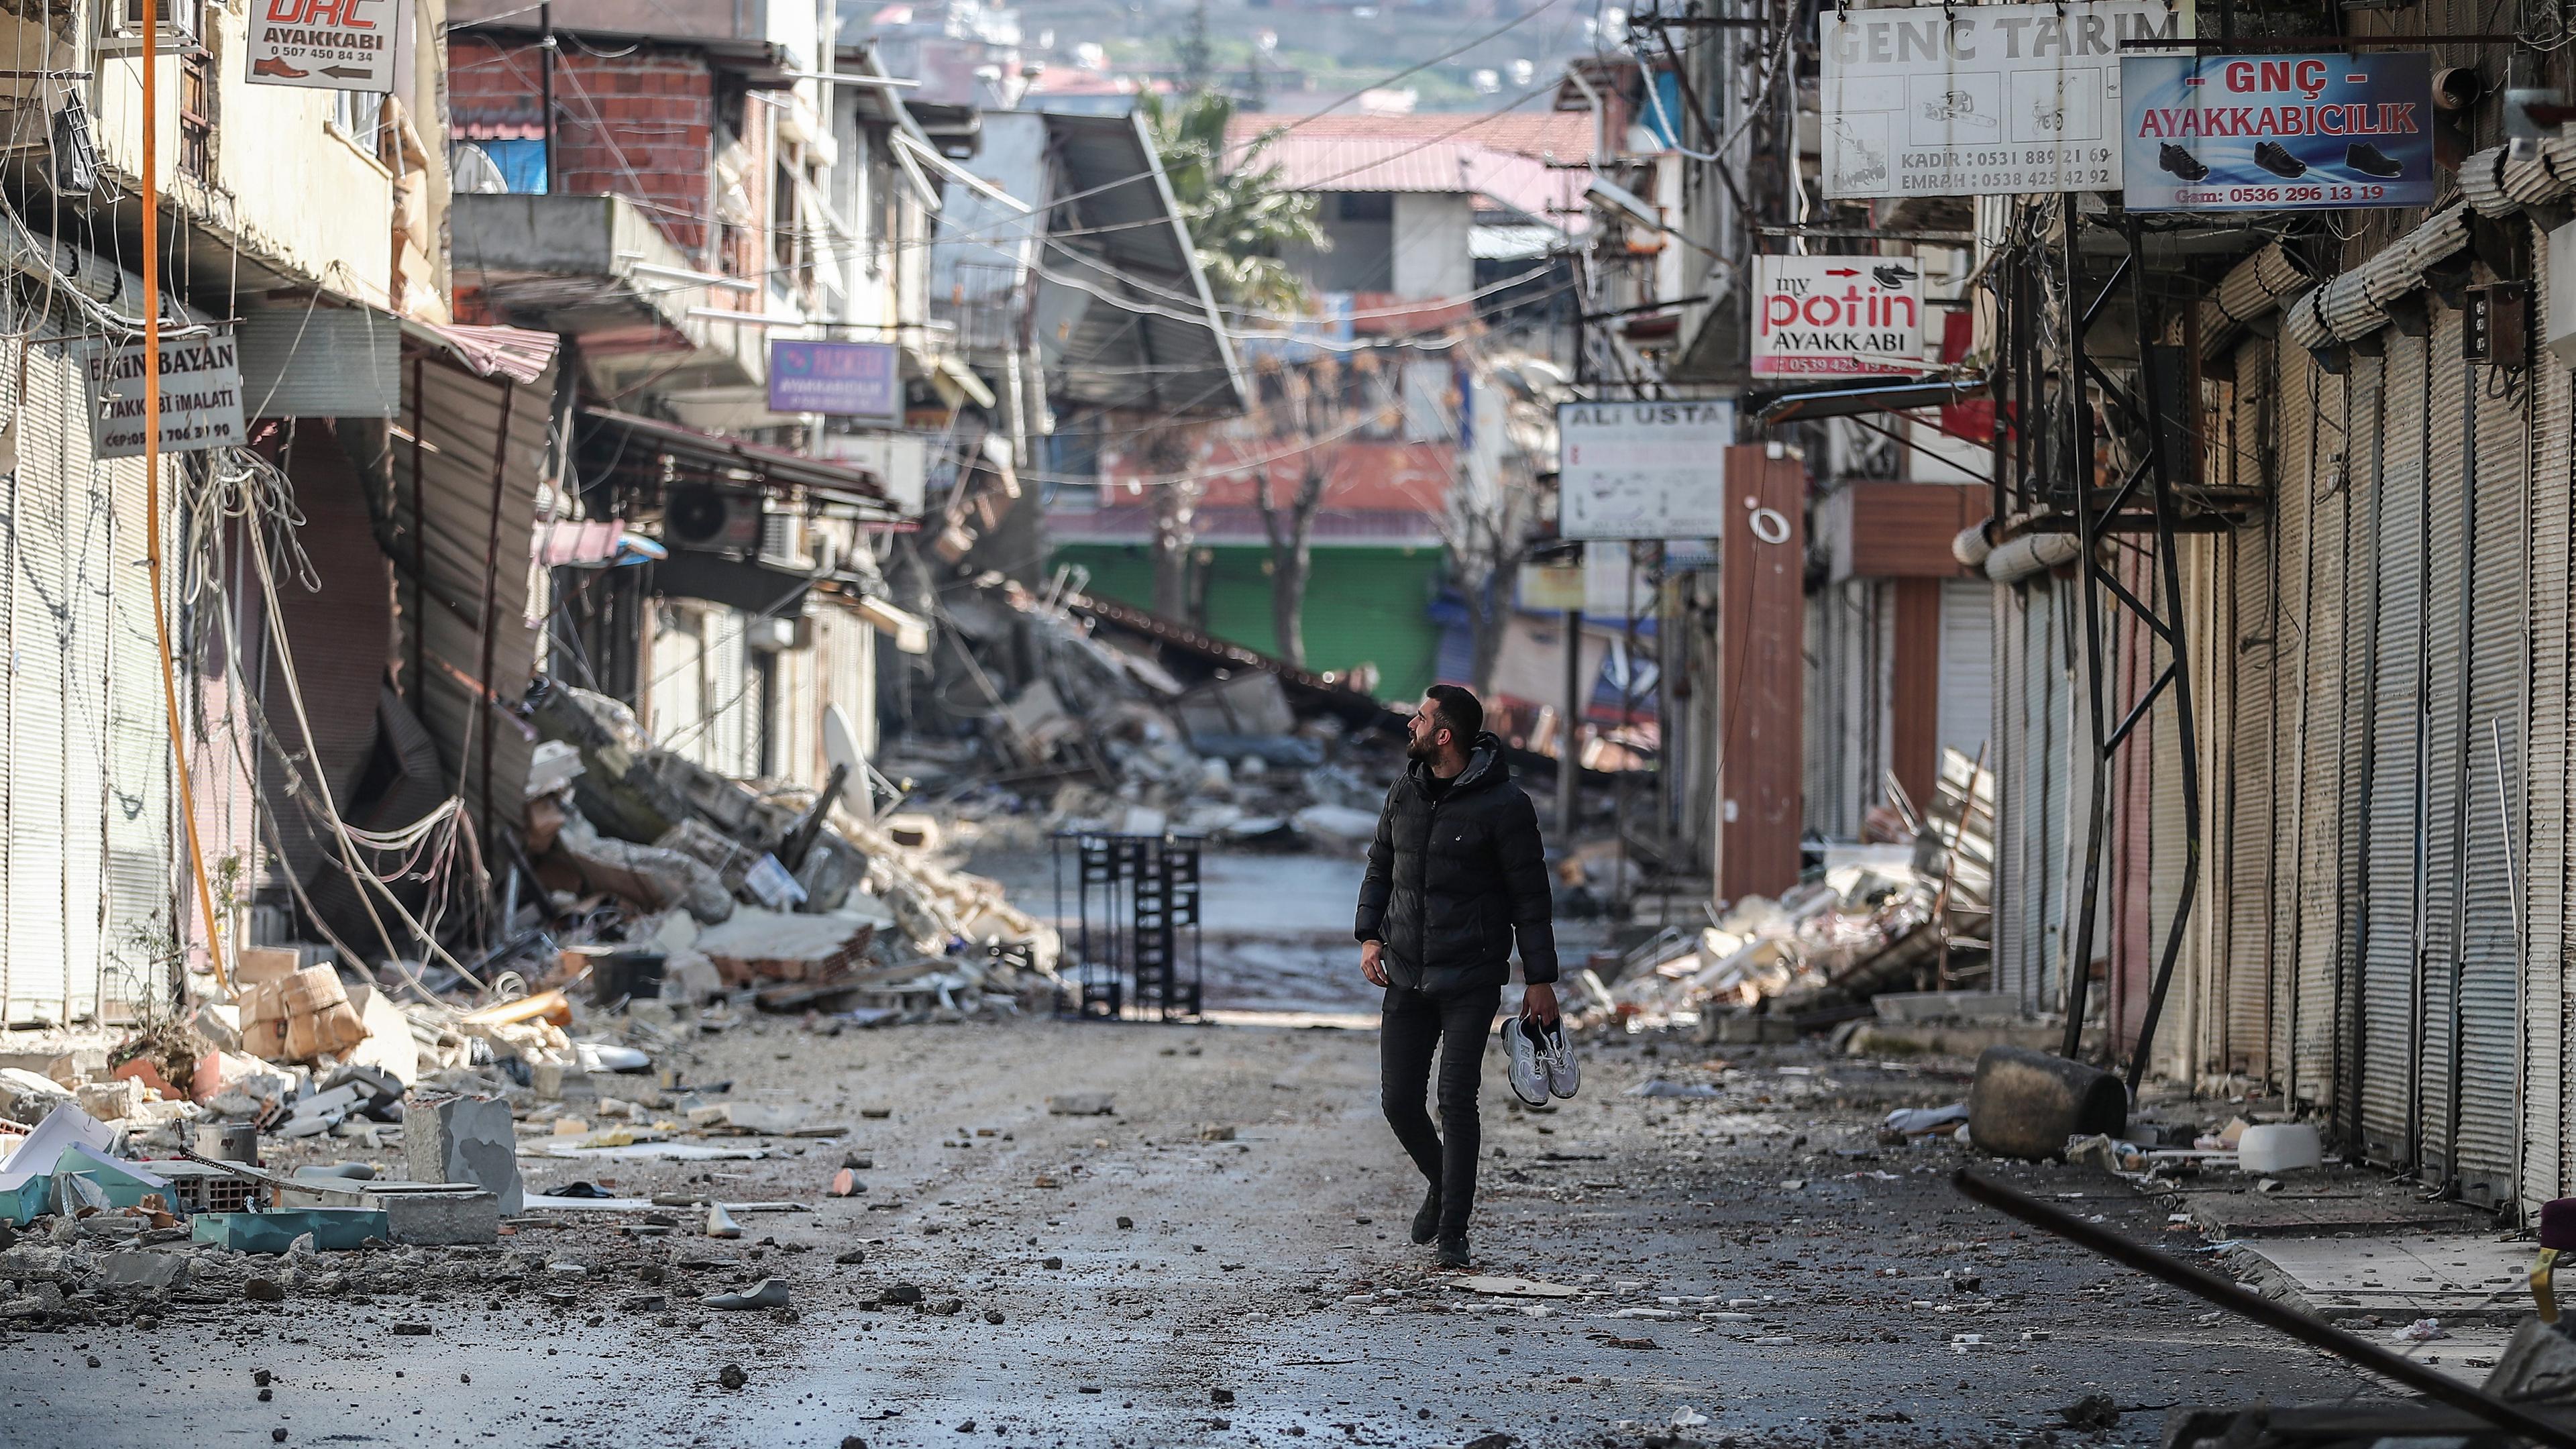 Ein Mann betrachtet sein beschädigtes Geschäft im Industriegebiet nach einem starken Erdbeben in Hatay (Türkei), aufgenommen am 21.02.2023 